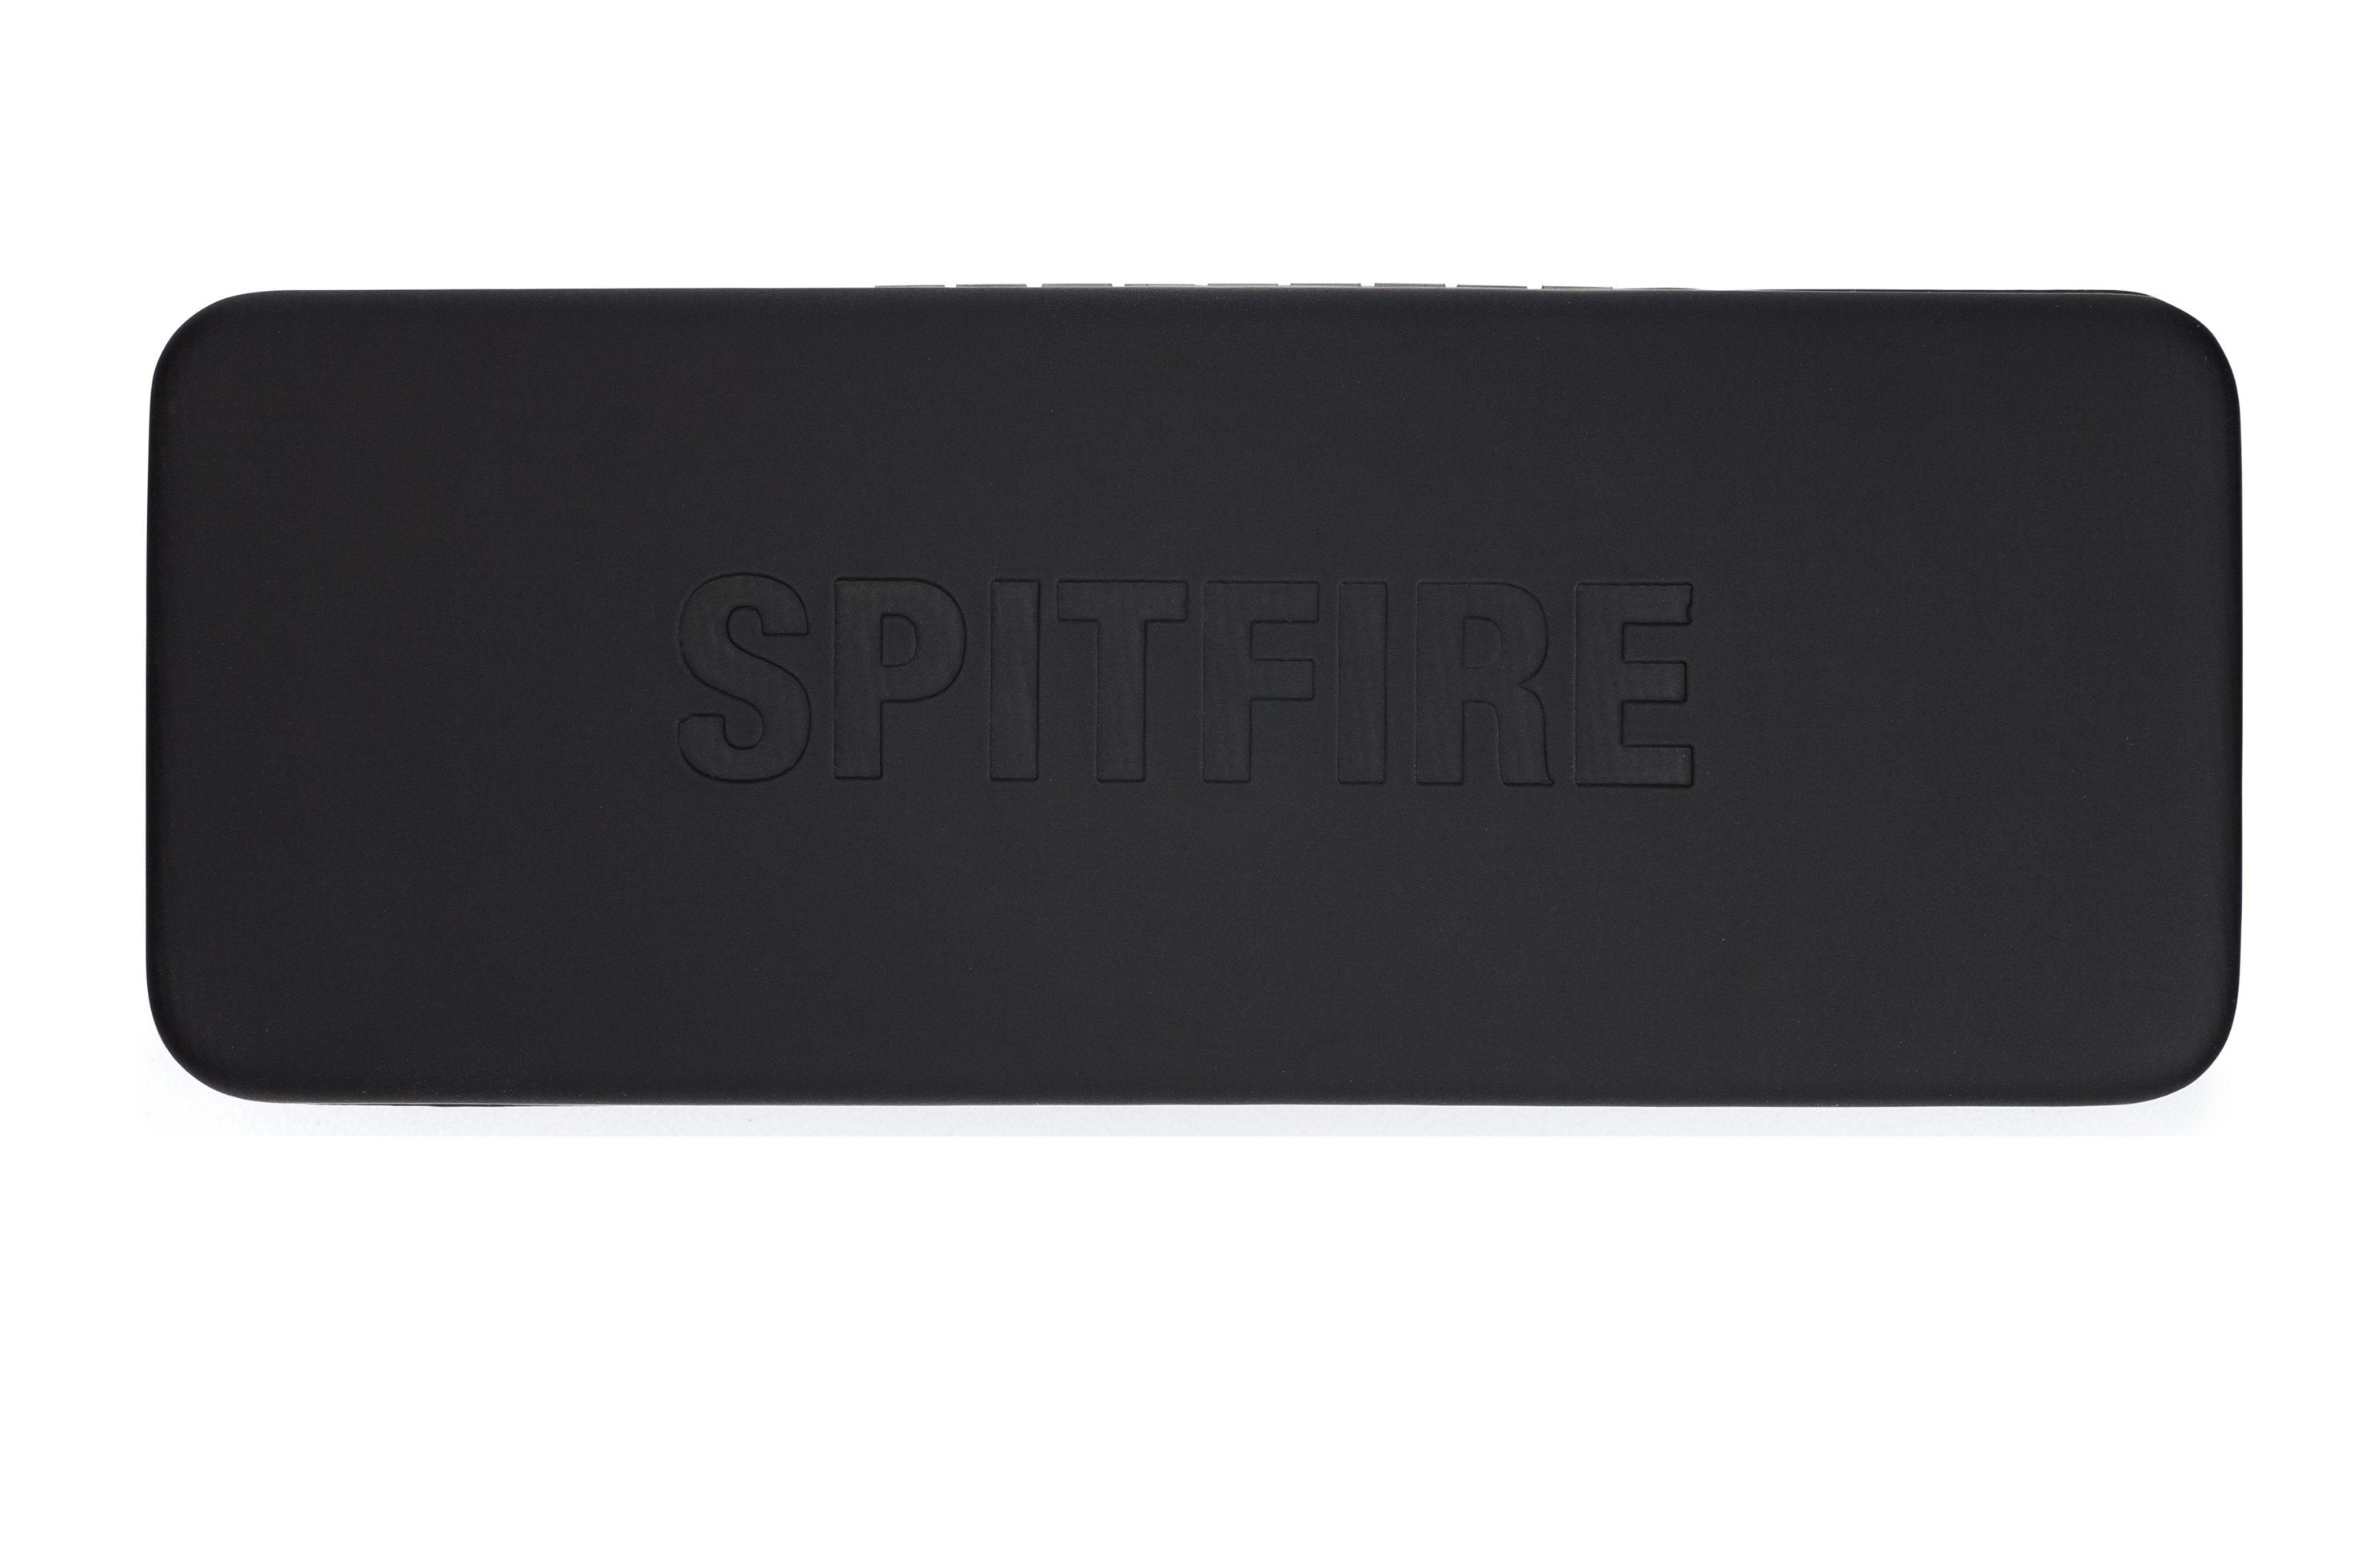 cut eighteen - Spitfire